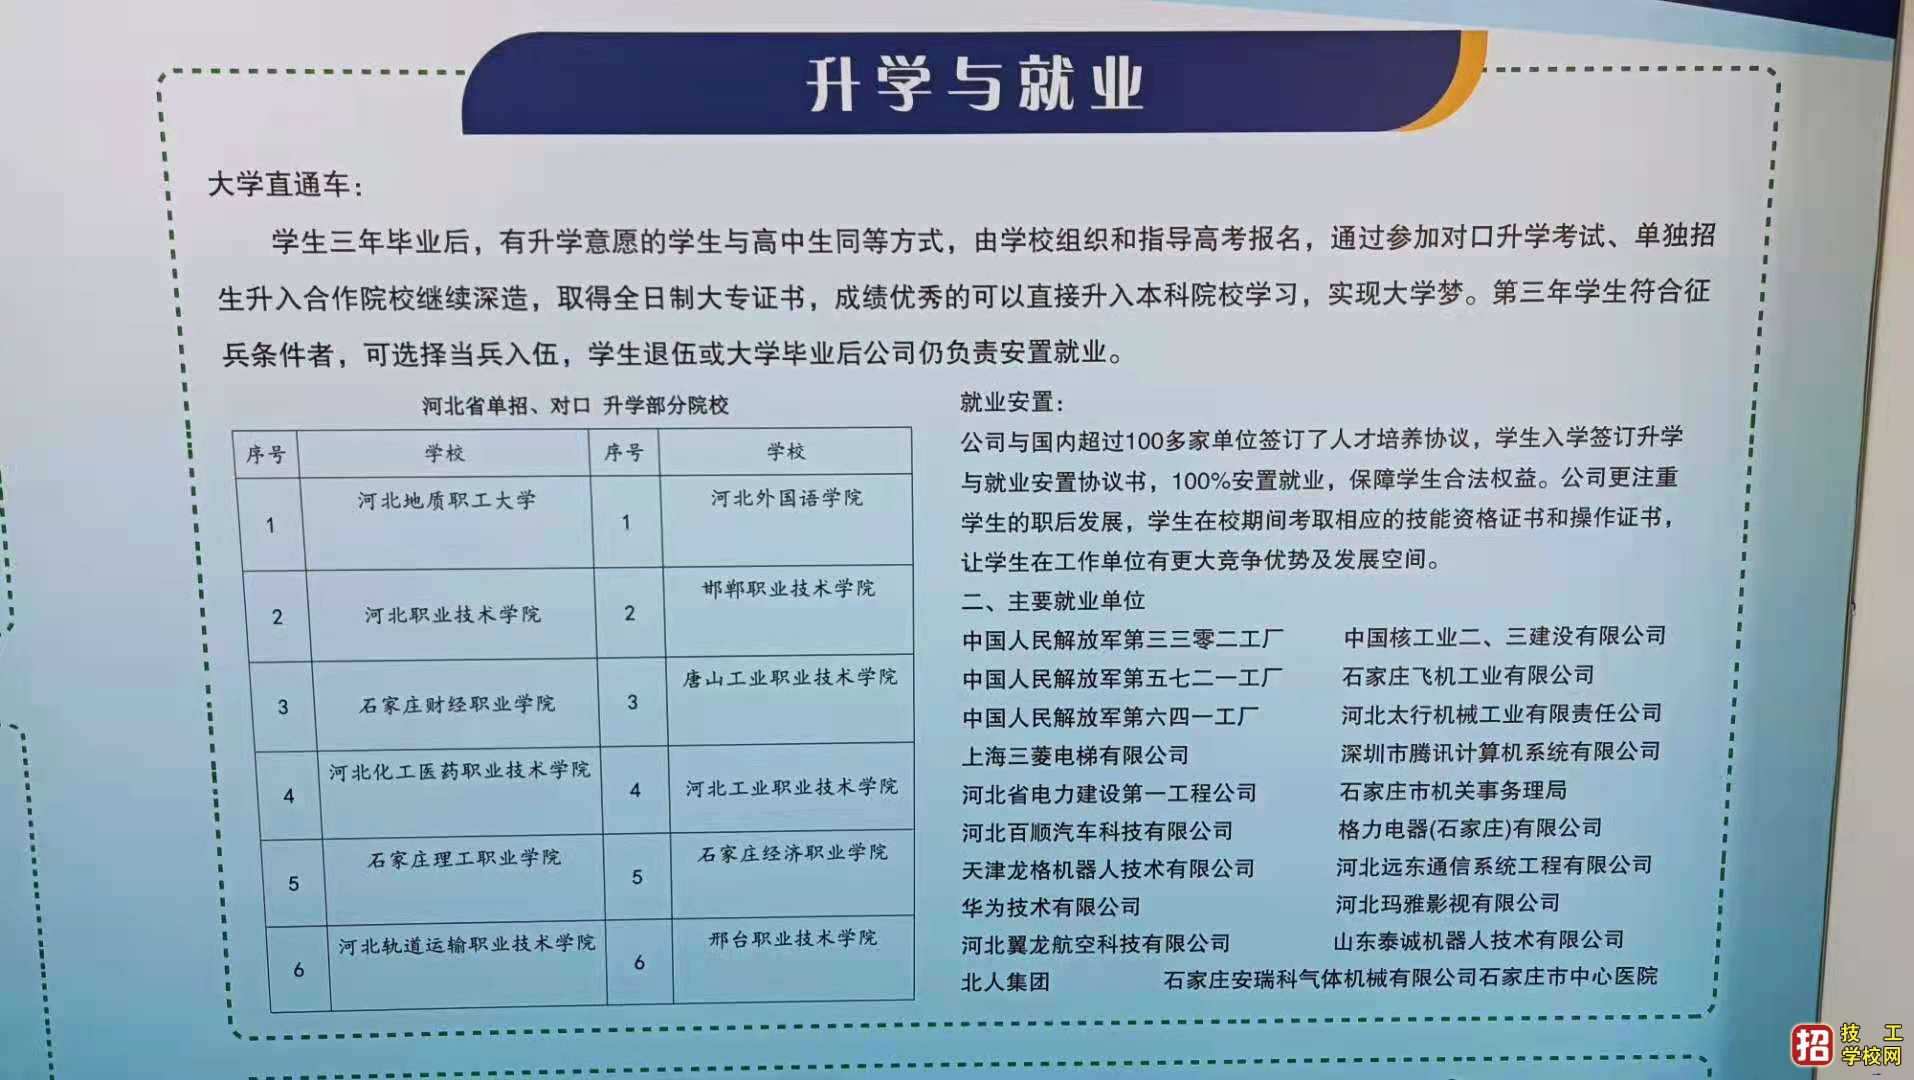 石家庄高级技工学校 学校列表 第6张